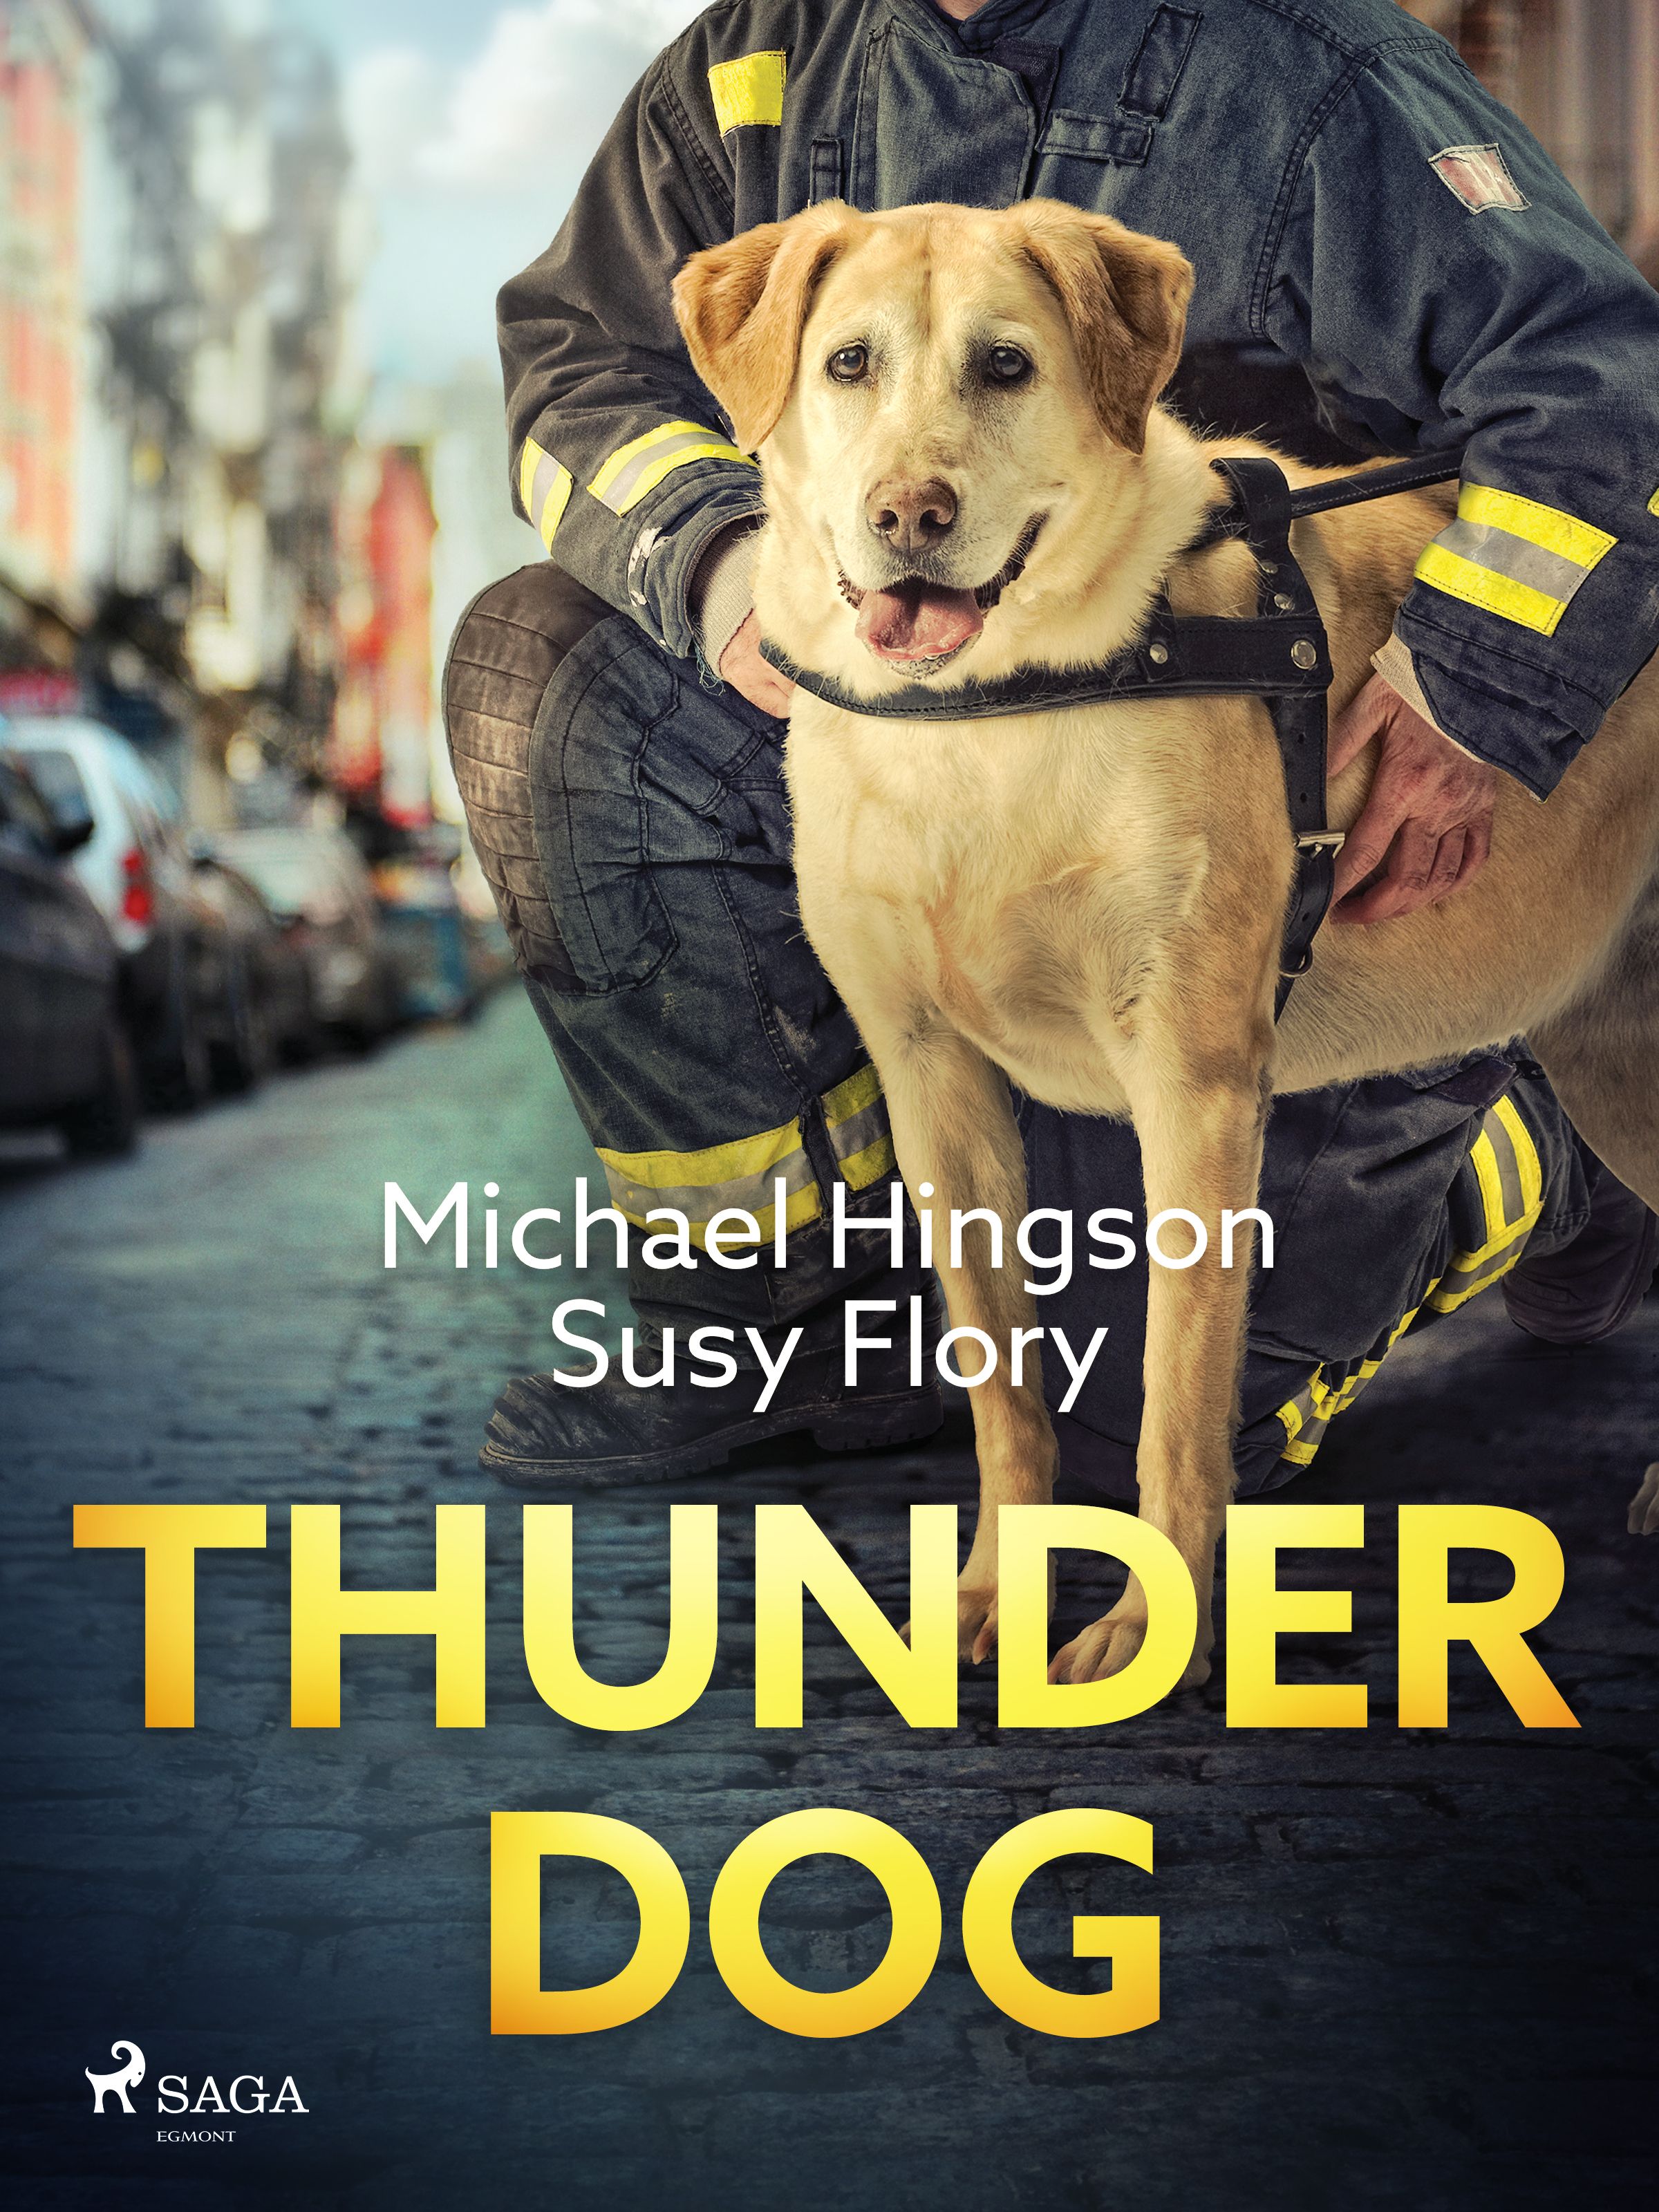 Thunder dog, e-bok av Susy Flory, Michael Hingson